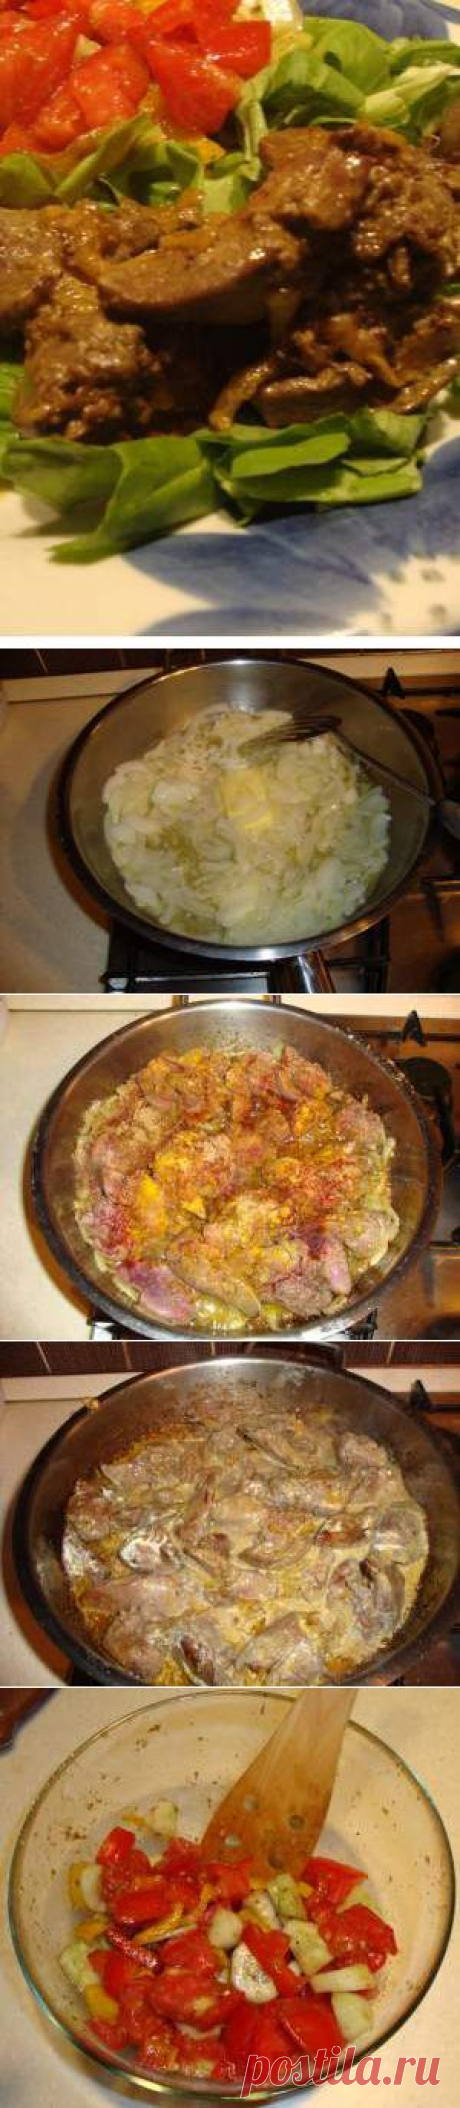 Куриная печень с овощным гарниром. Как приготовить Куриная печень с овощным гарниром | Verner-Diet.ru